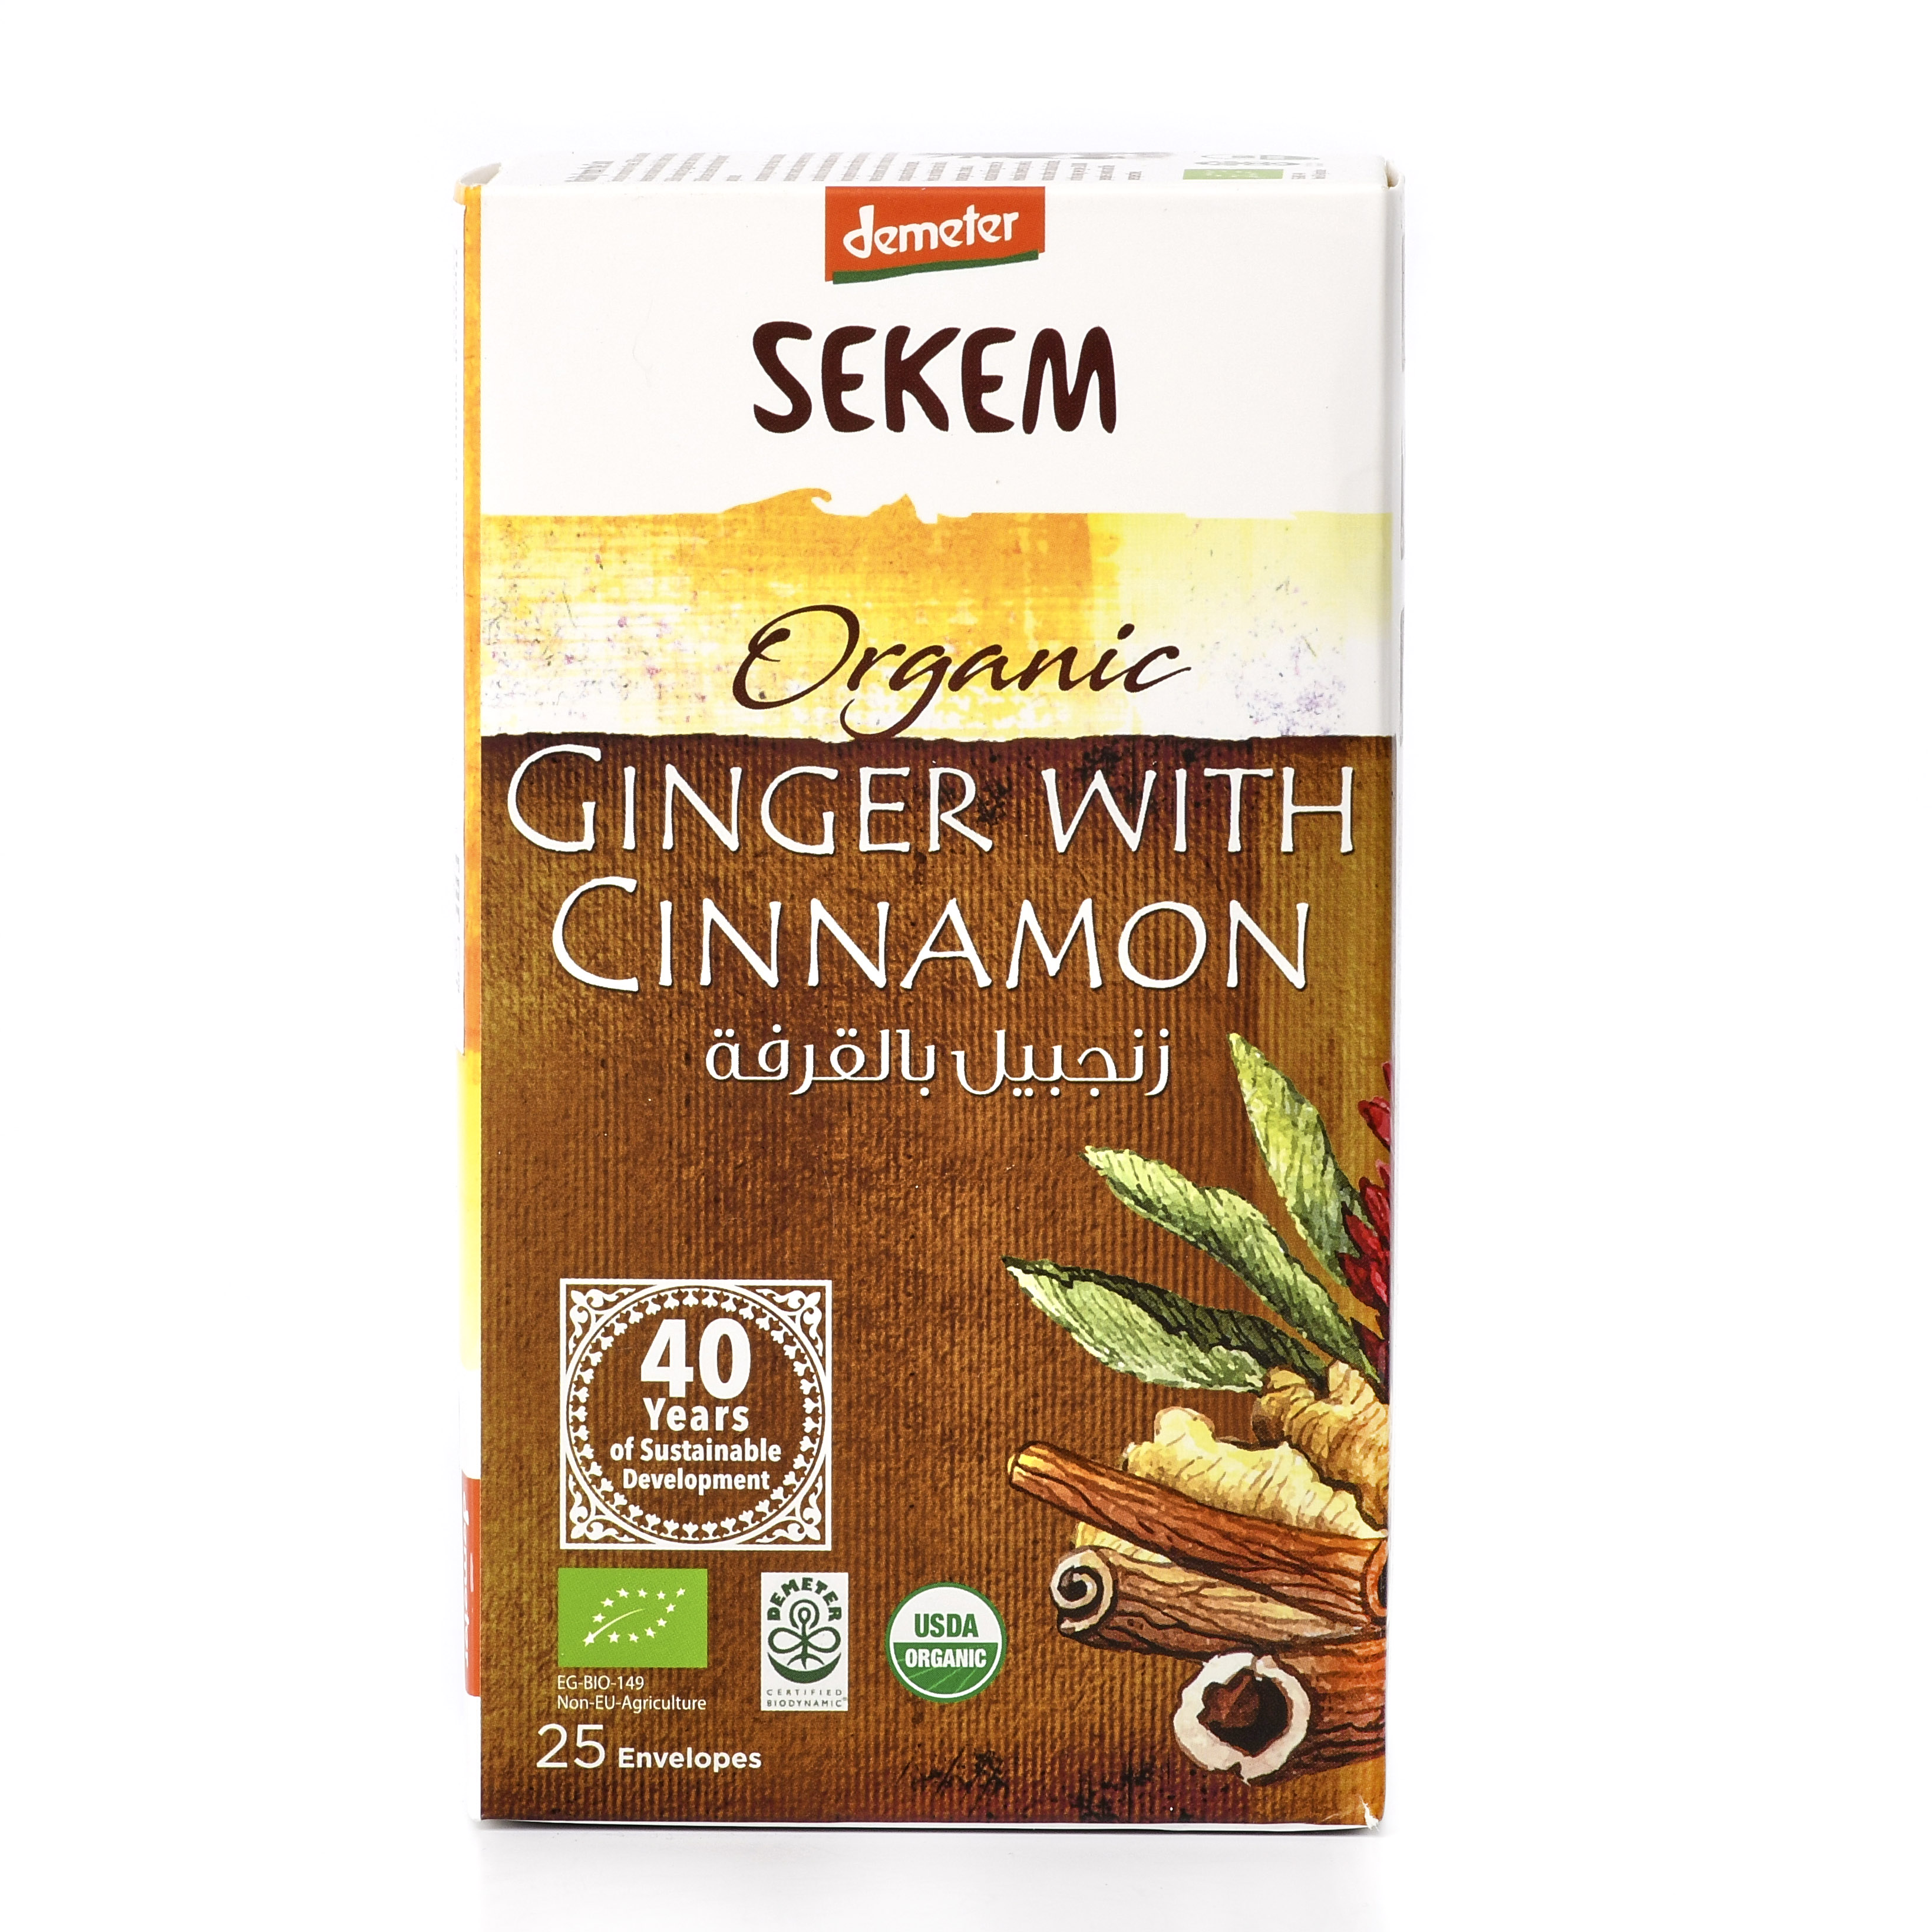 Органический пряный чайный напиток SEKEM, имбирь+корица, Demeter - 50 г